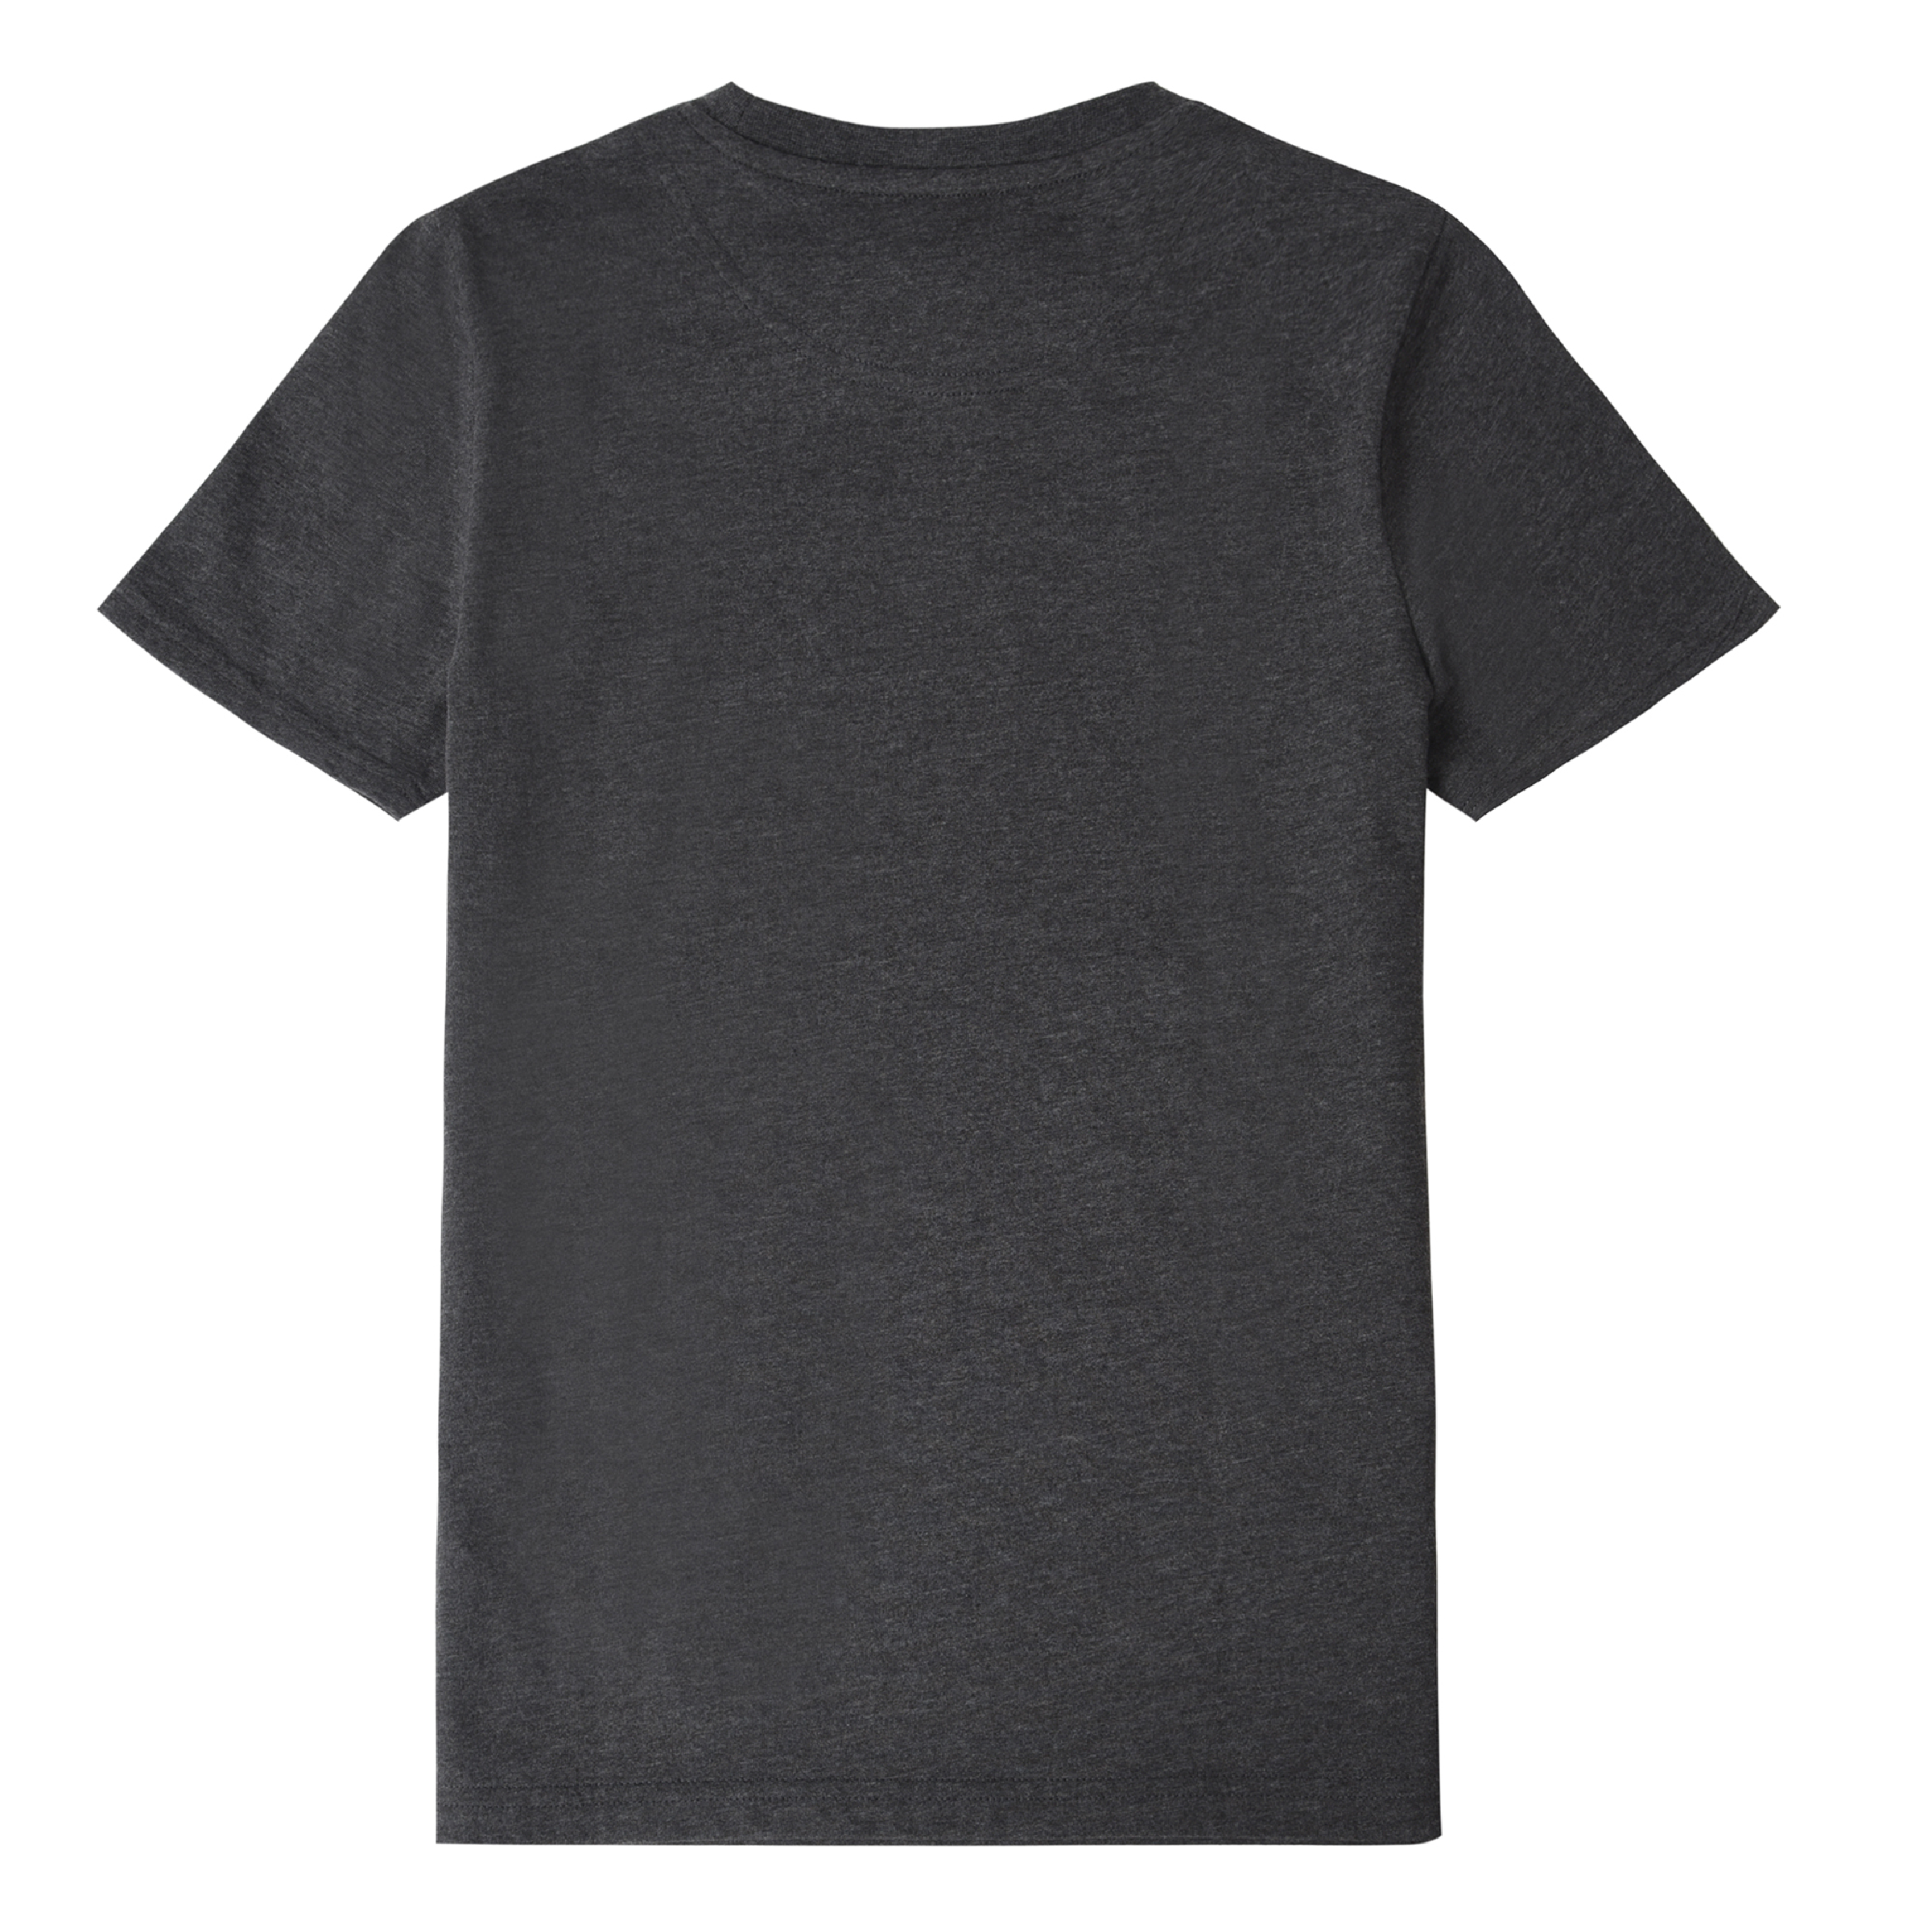 Jongens Classic T-Shirt Charcoal Grey Marl van Lyle & Scott in de kleur Charcoal Grey in maat 170-176.